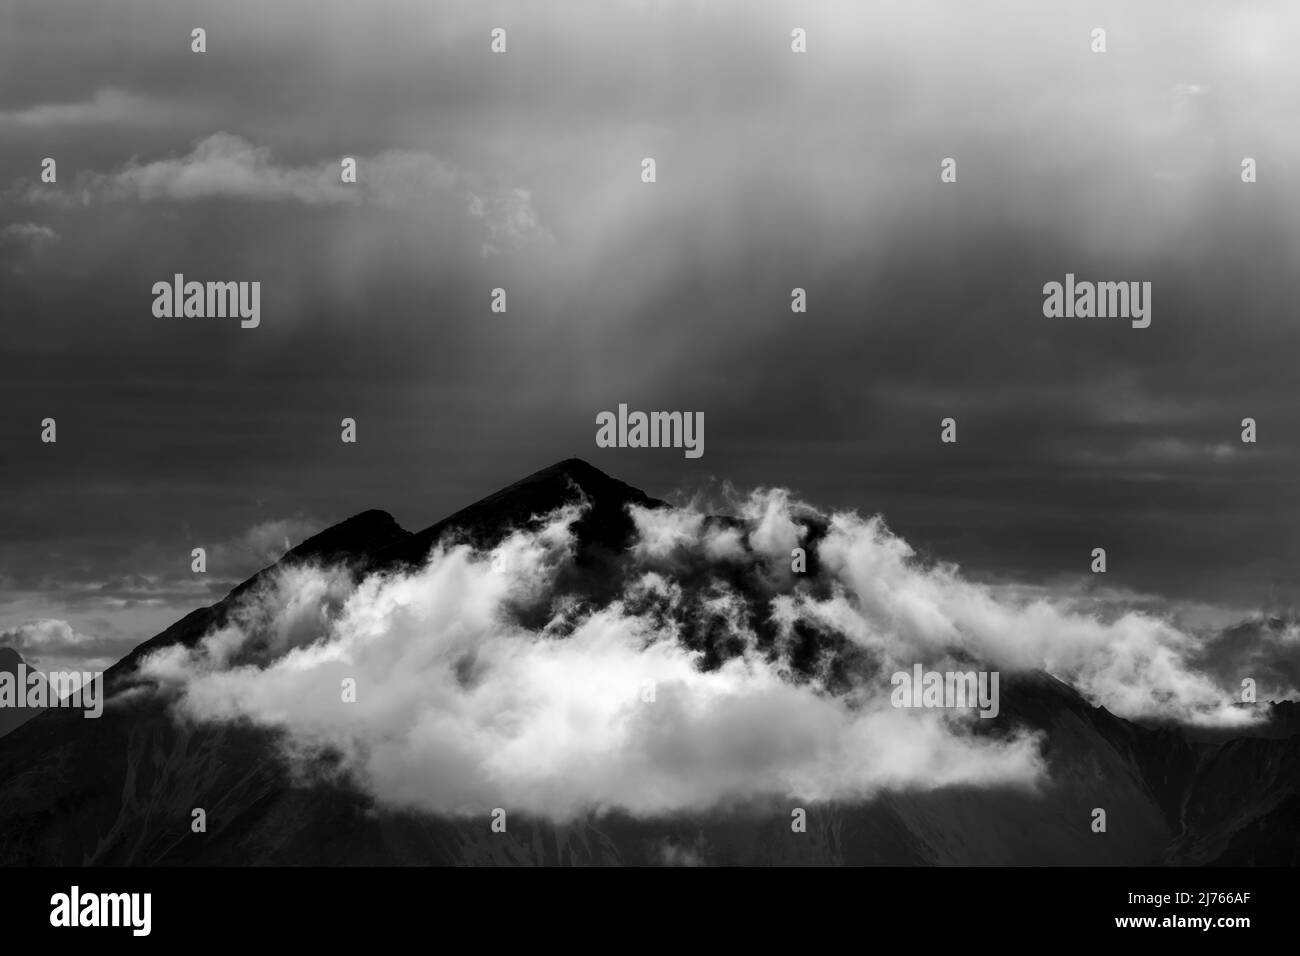 Die Soiernspitze und Gruppe, fotografiert von der Mondscheinspitze wenige Kilometer entfernt. Eine kleine Wolke unter dem Gipfel, sowie Dunst und leichter Regen werden von der Dämmerung erleuchtet und bilden eine unwirkliche Lichtatmosphäre. Stockfoto